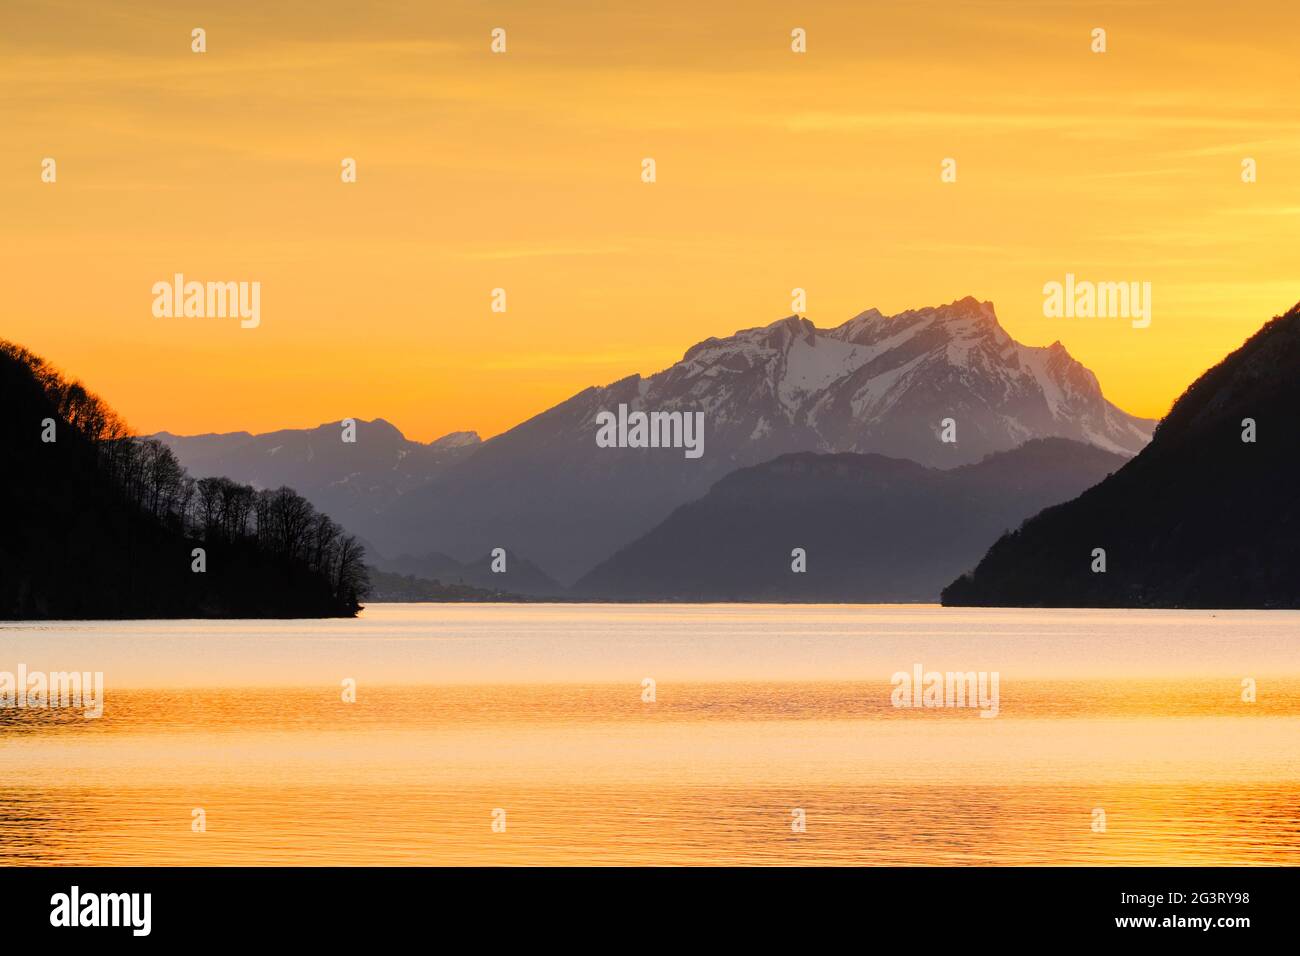 lac avec paysage de montagne, vue de Brunnen sur le lac de Lucerne au coucher du soleil, Mont Pilatus en arrière-plan, Suisse Banque D'Images